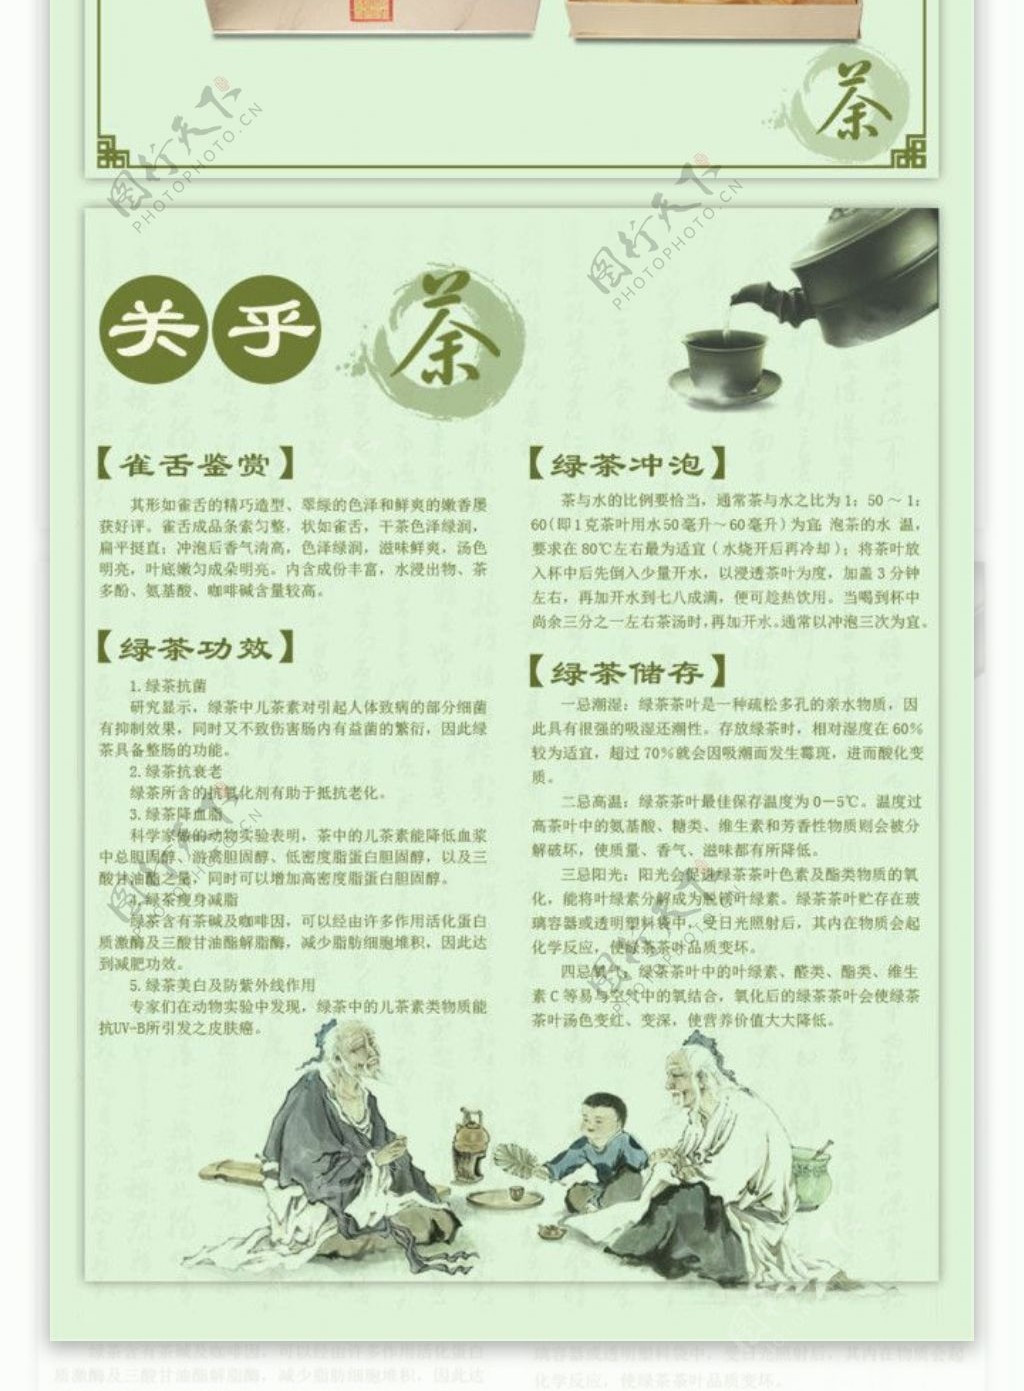 淘宝电商食品茶饮详情页模板设计图